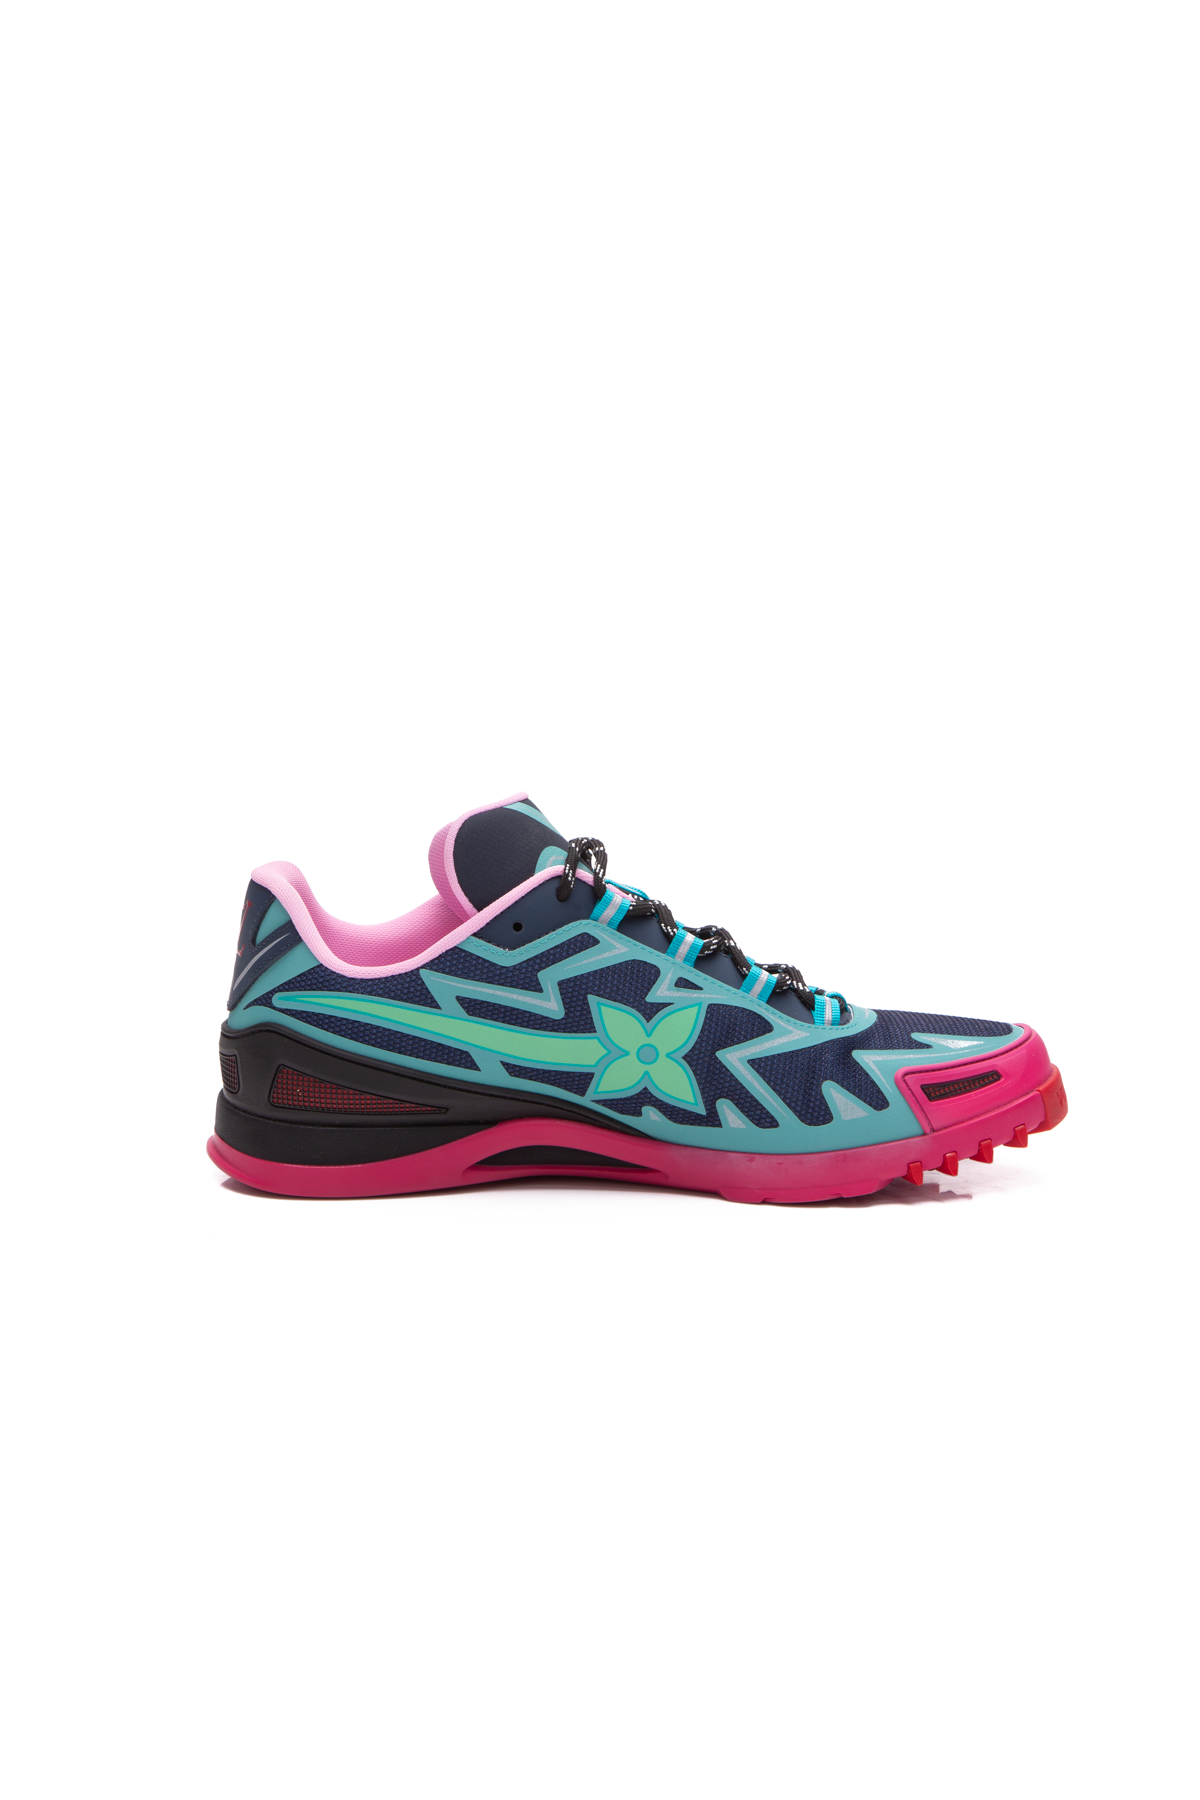 LV louis vuitton sprint Sneaker men sport shoes 3 colors without